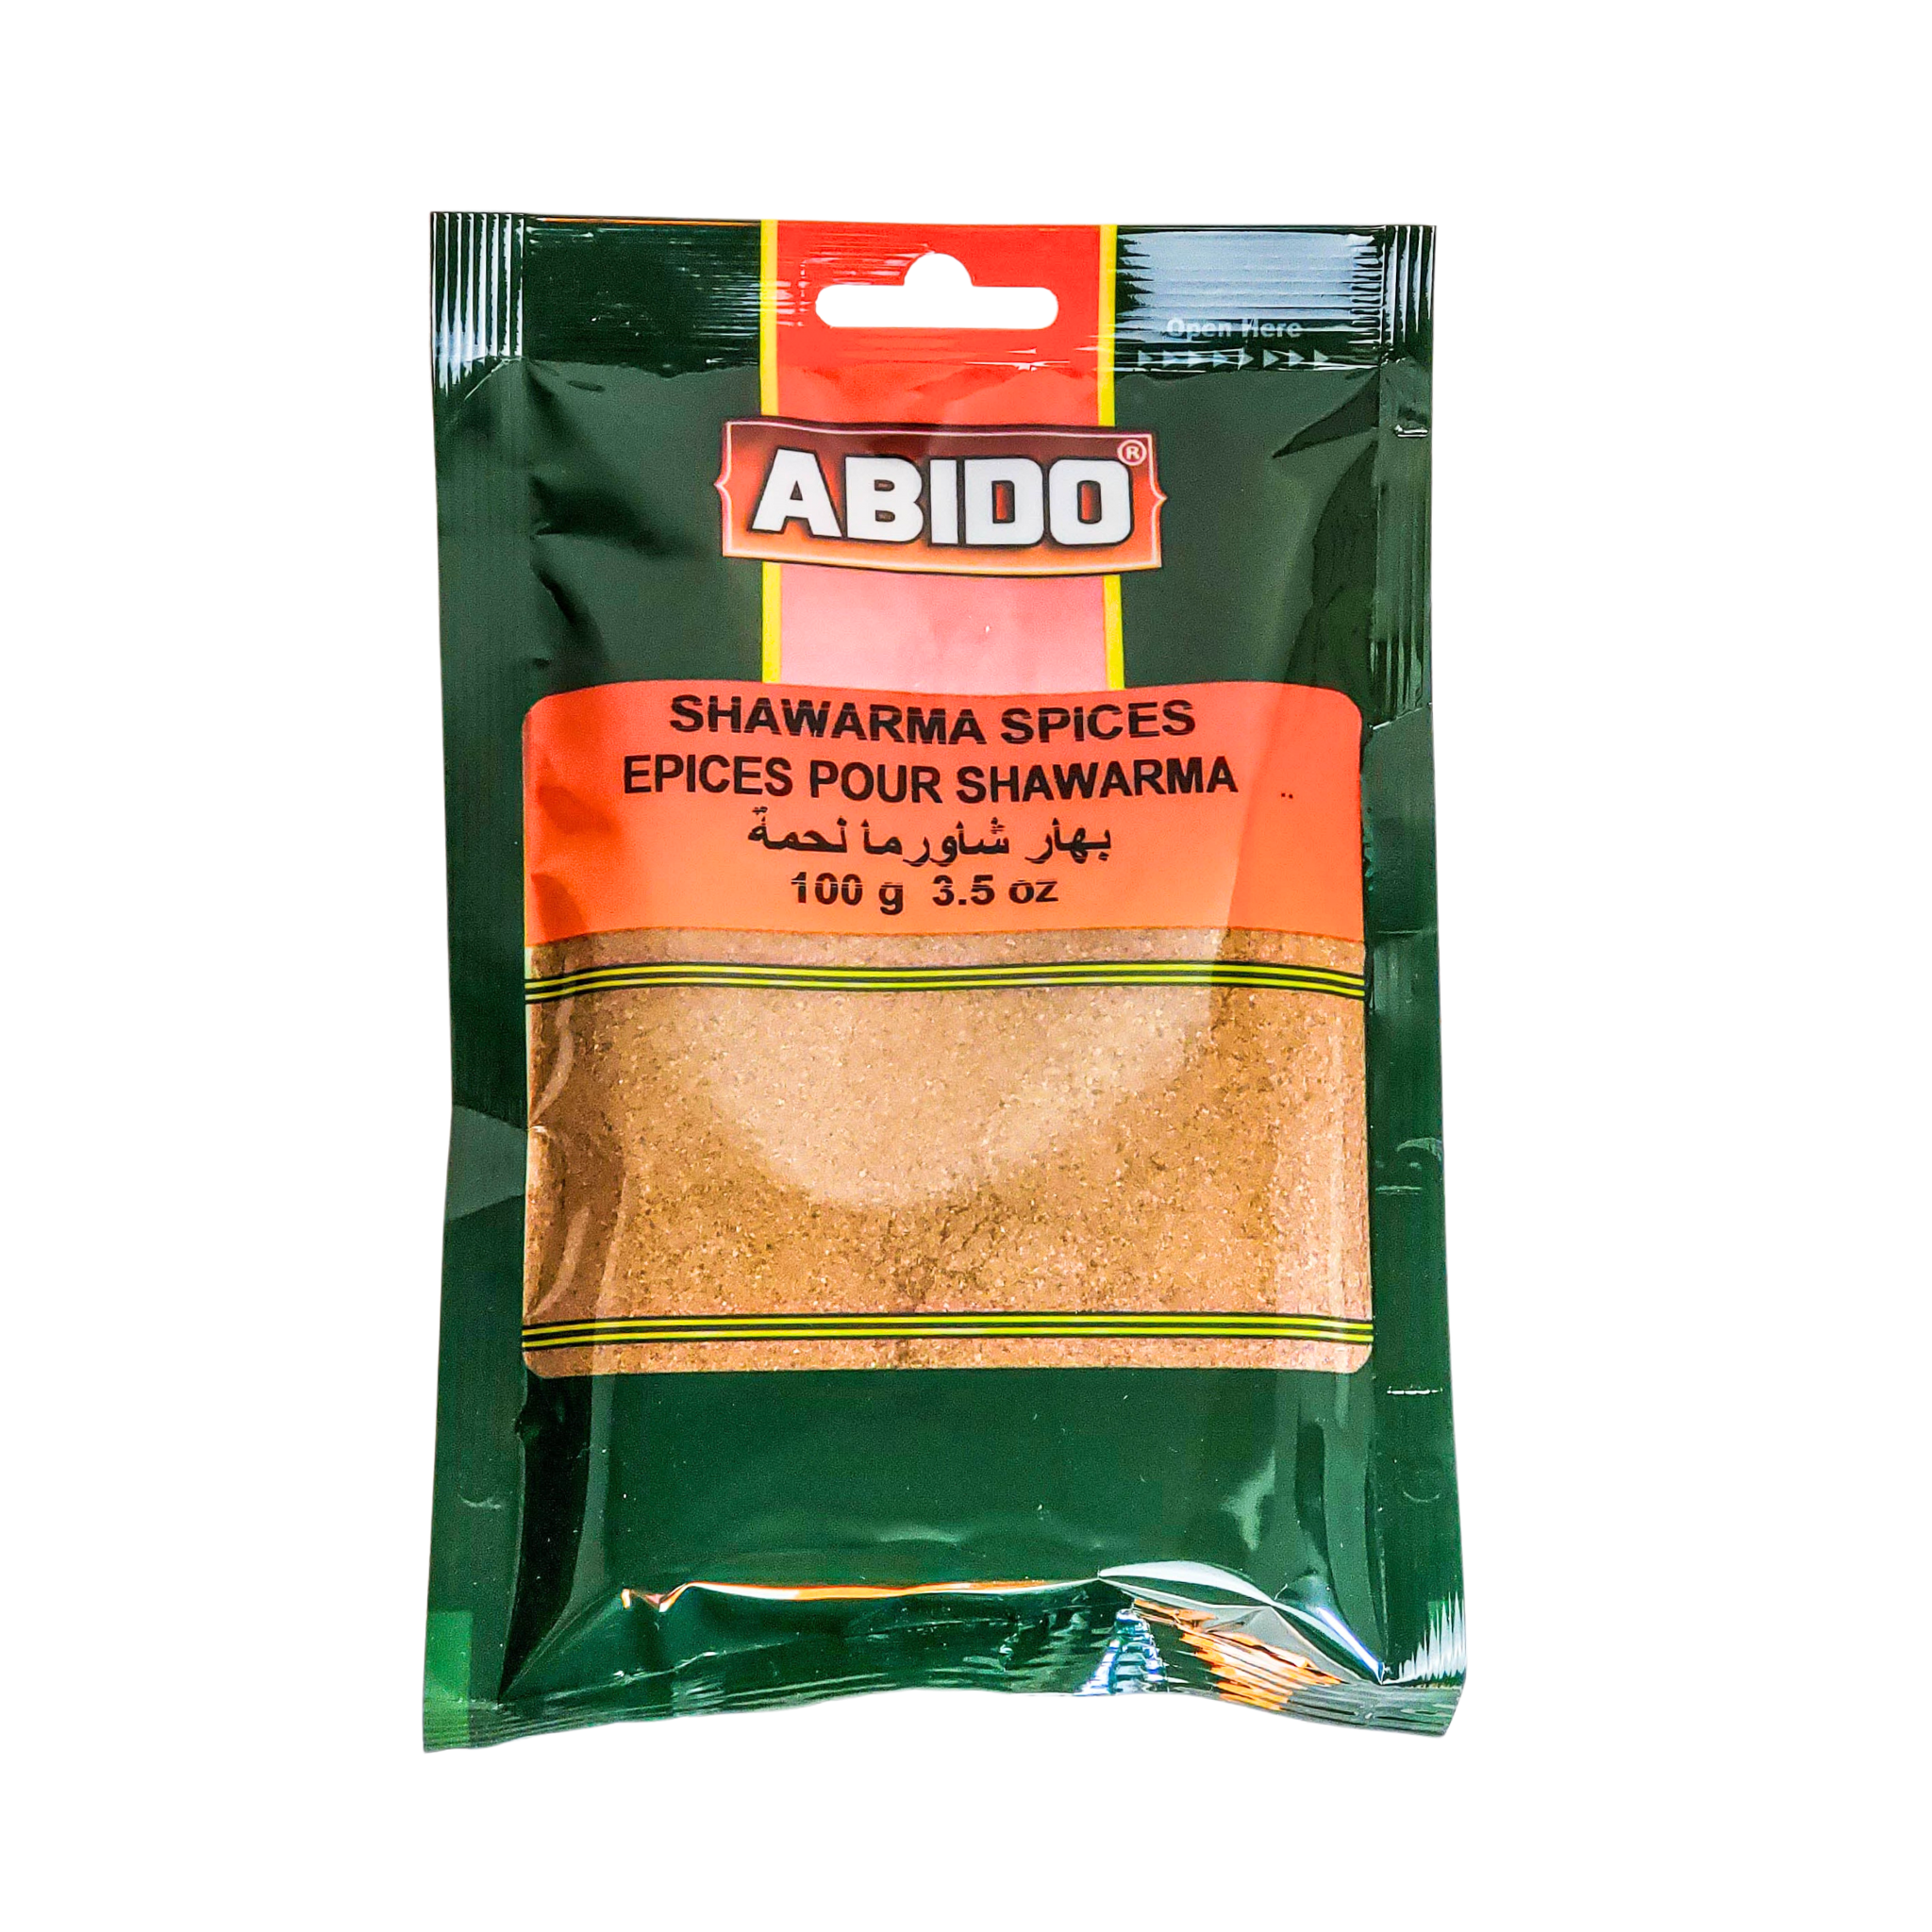 Abido (Shawarma Spices/ Epices Pour Shawarma) 100g